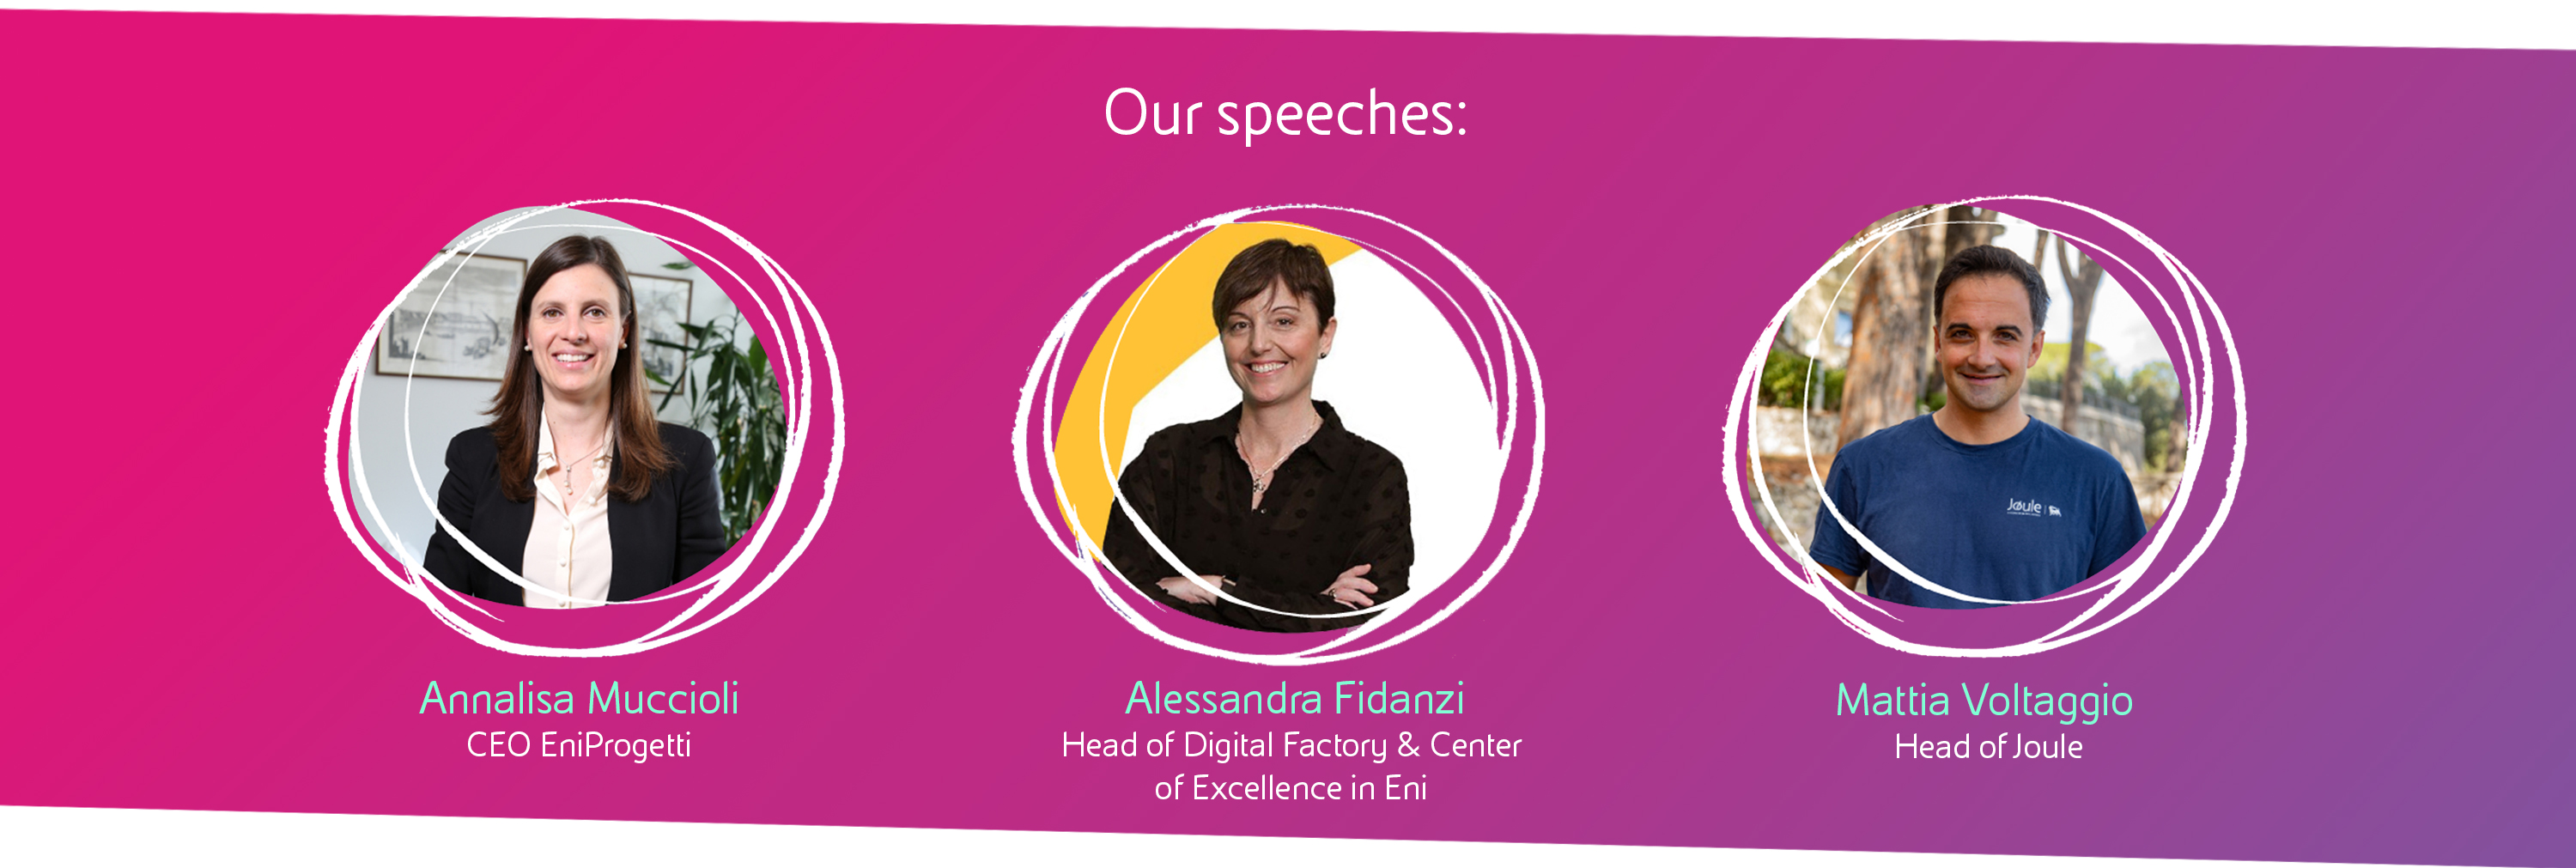 speech-woman-for-impact2022-desk-eng.jpg